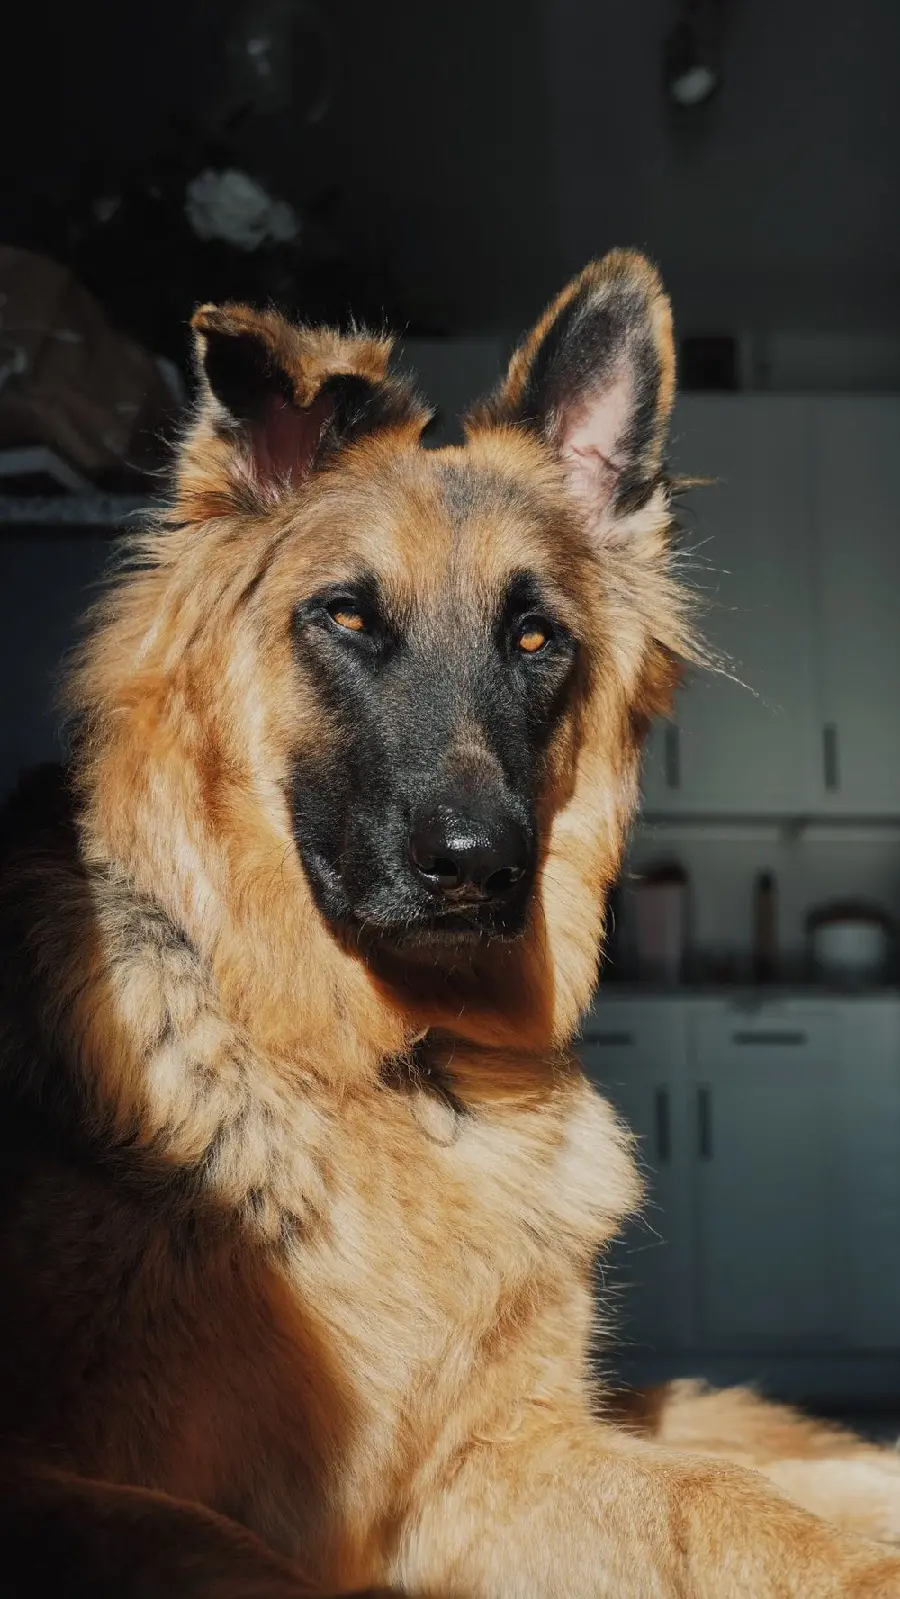 جذاب ترین عکس های گرفته شده از سگ نژاد دوست داشتنی ژرمن شپرد برای آیفون 